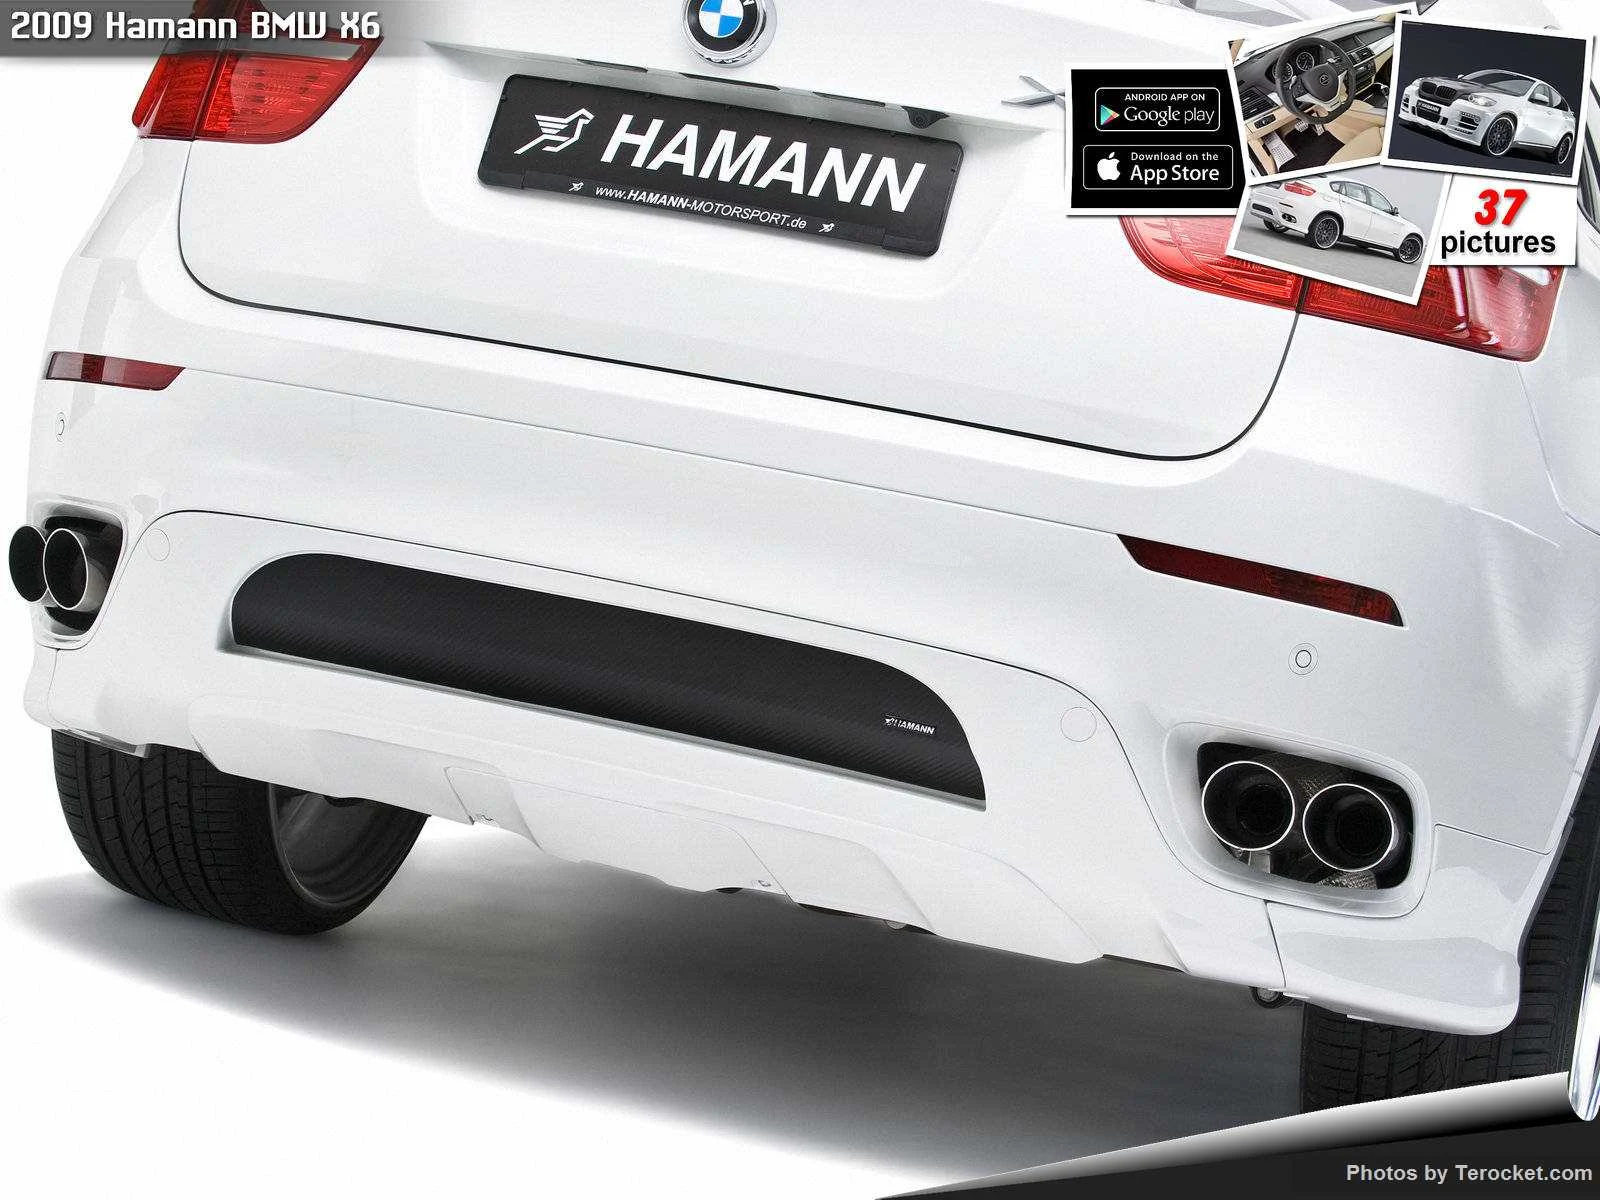 Hình ảnh xe ô tô Hamann BMW X6 2009 & nội ngoại thất